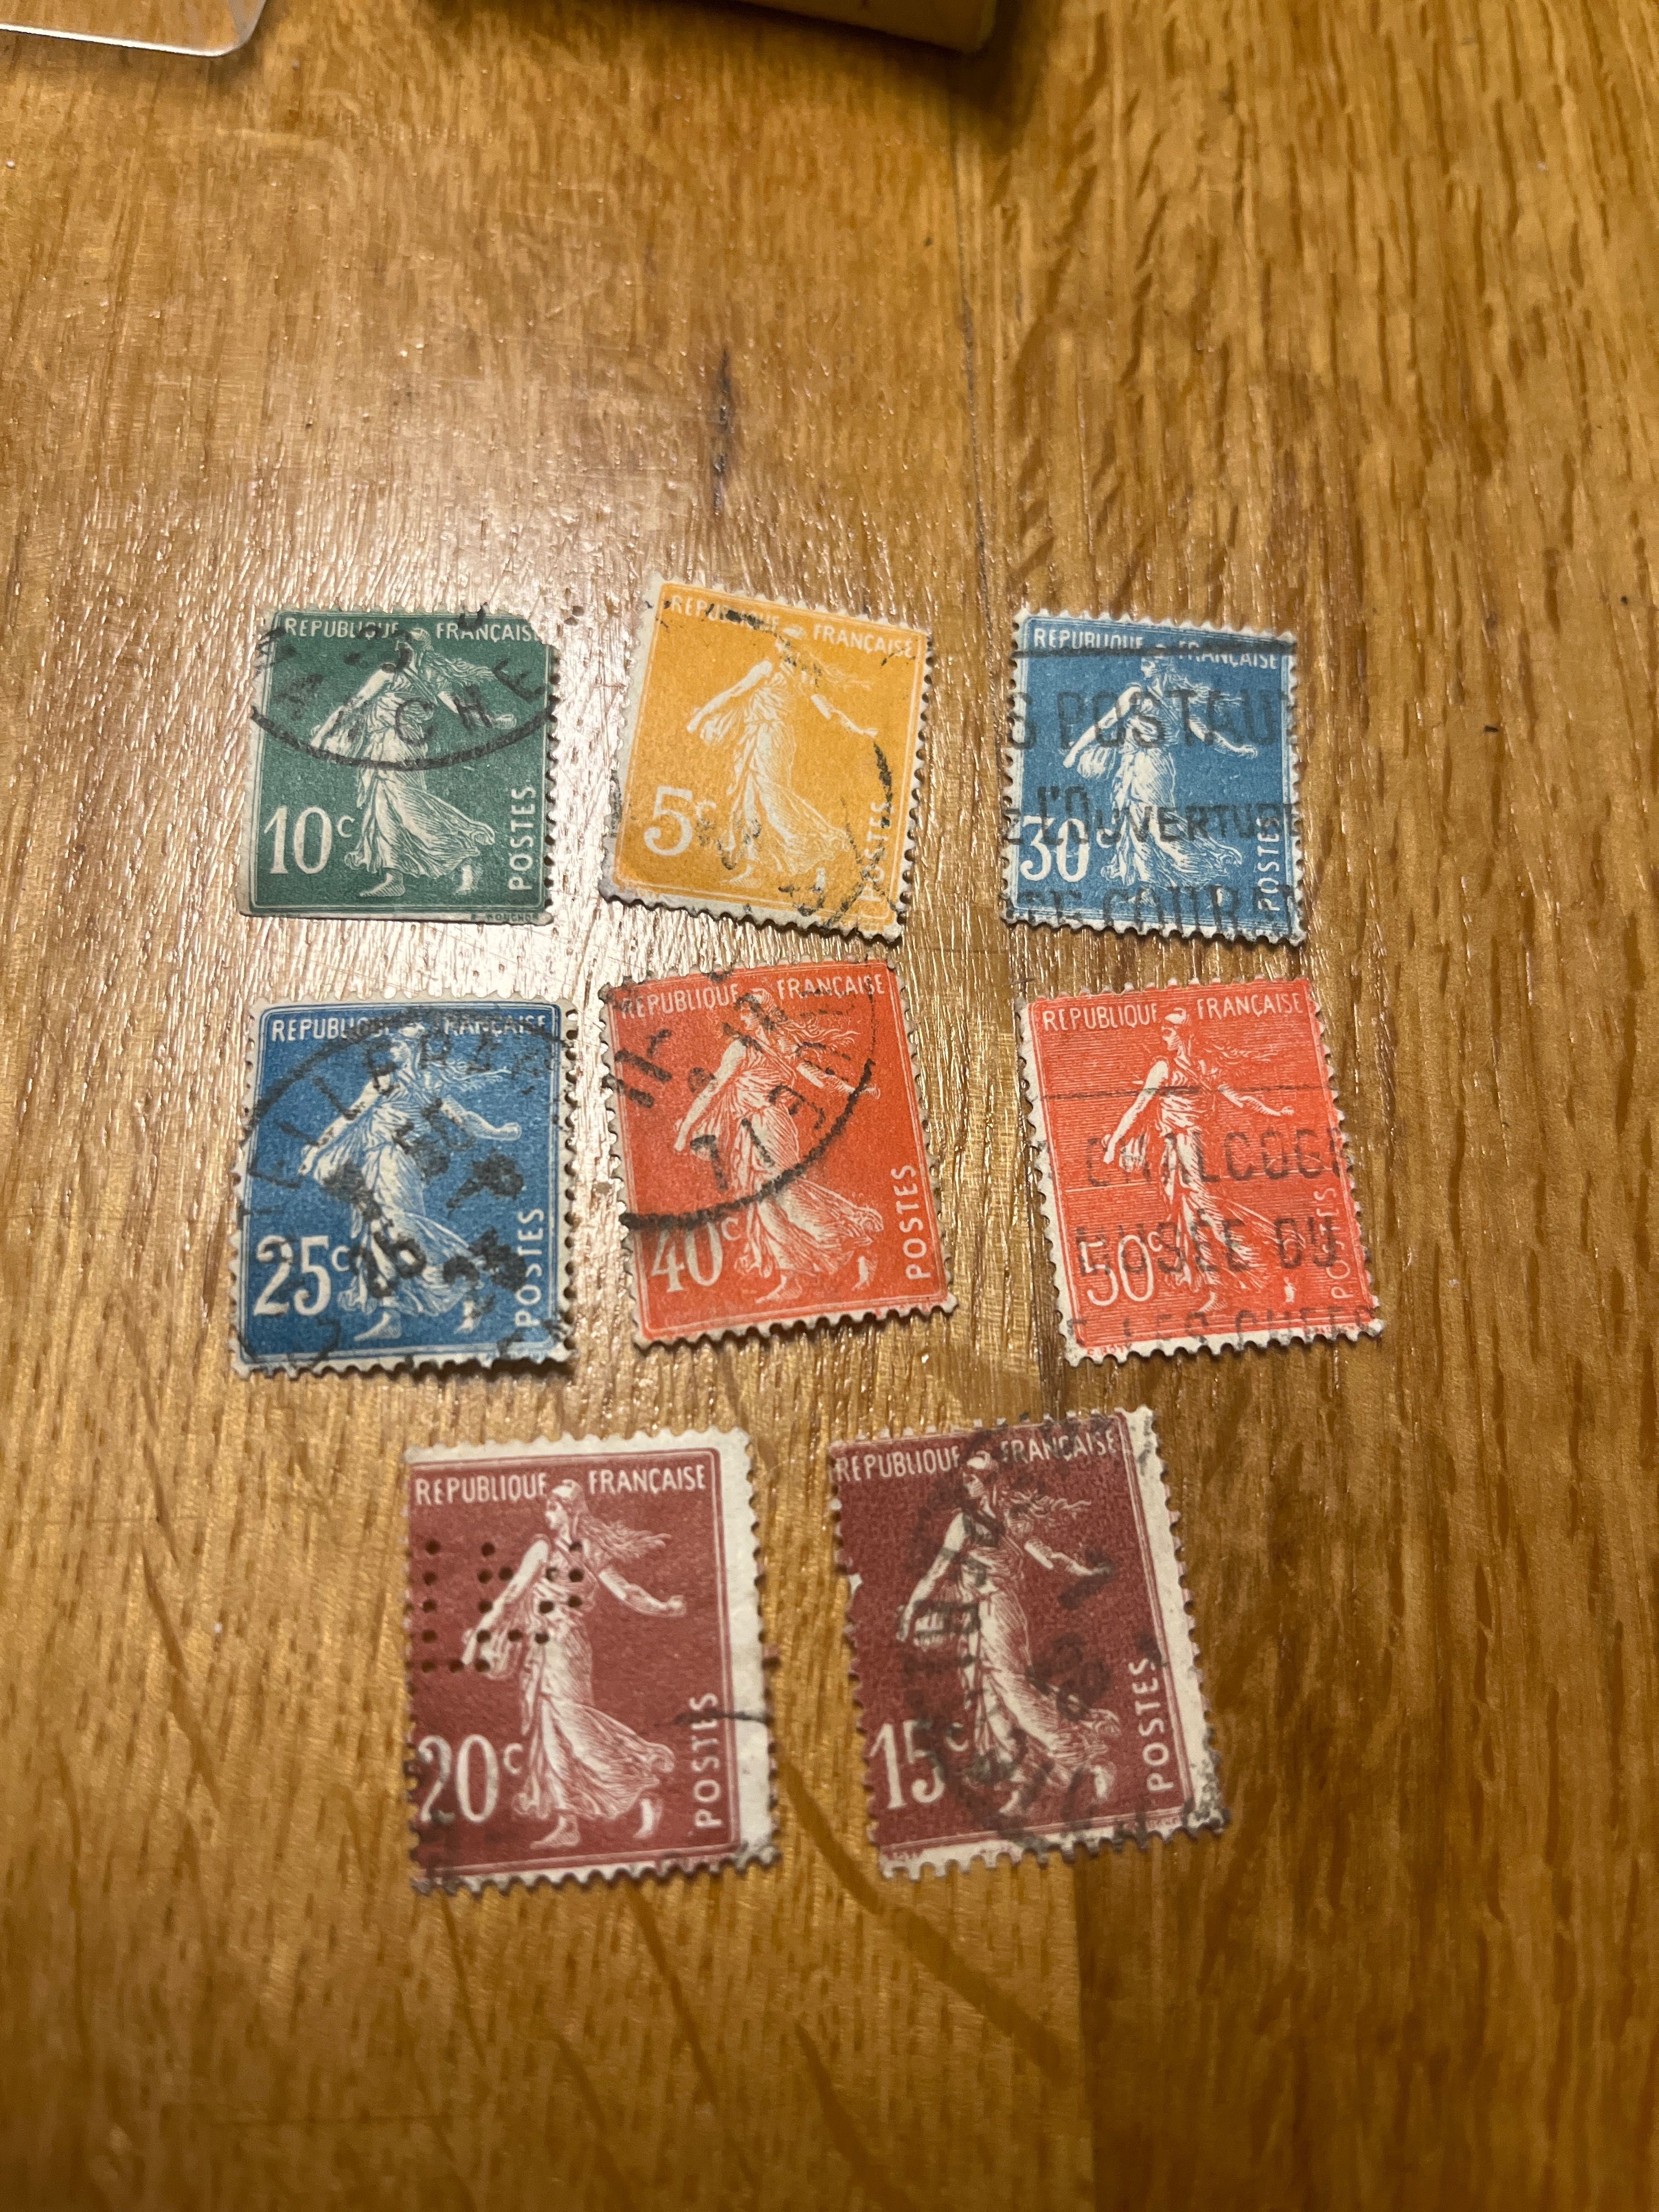 Coleção de selos França Semeuse